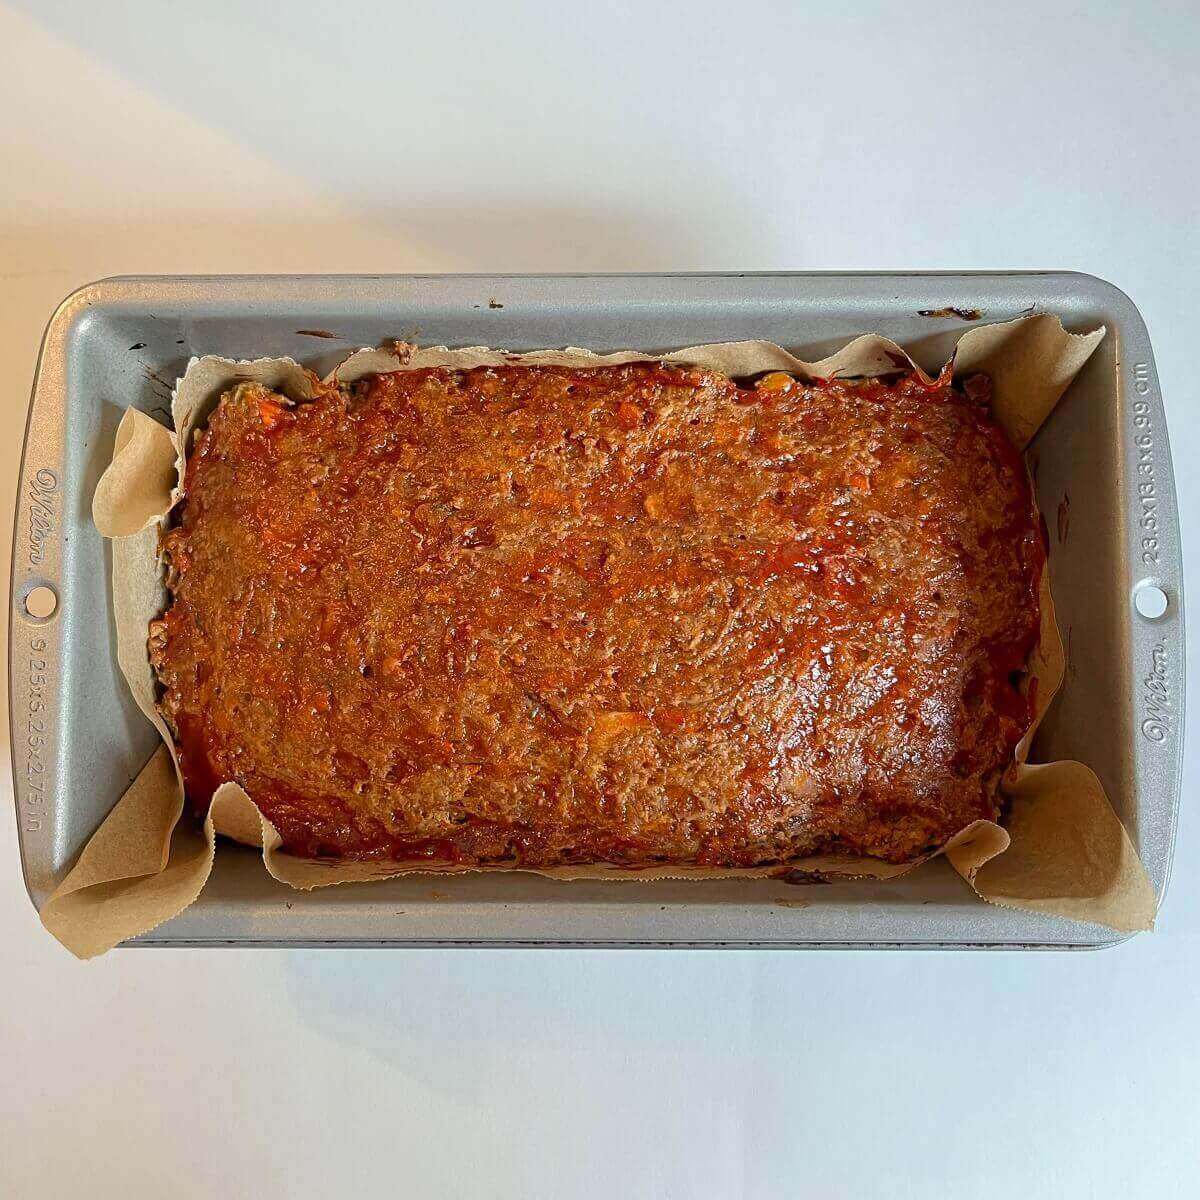 Meatloaf in a metal pan.